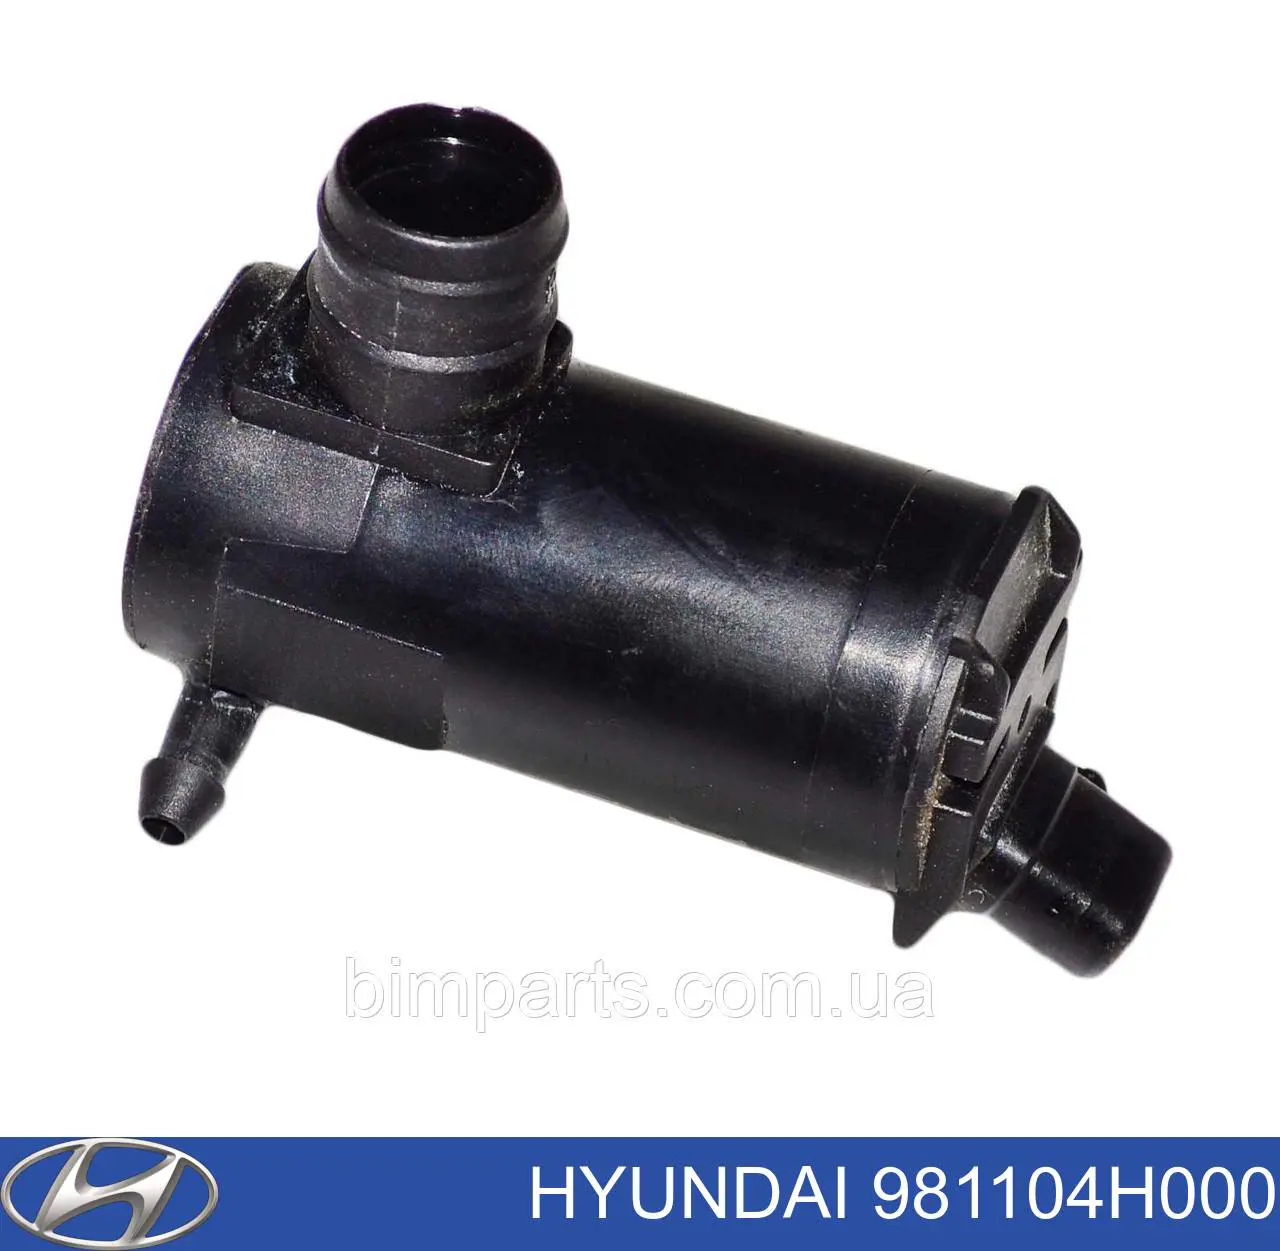 981104H000 Hyundai/Kia мотор стеклоочистителя лобового стекла